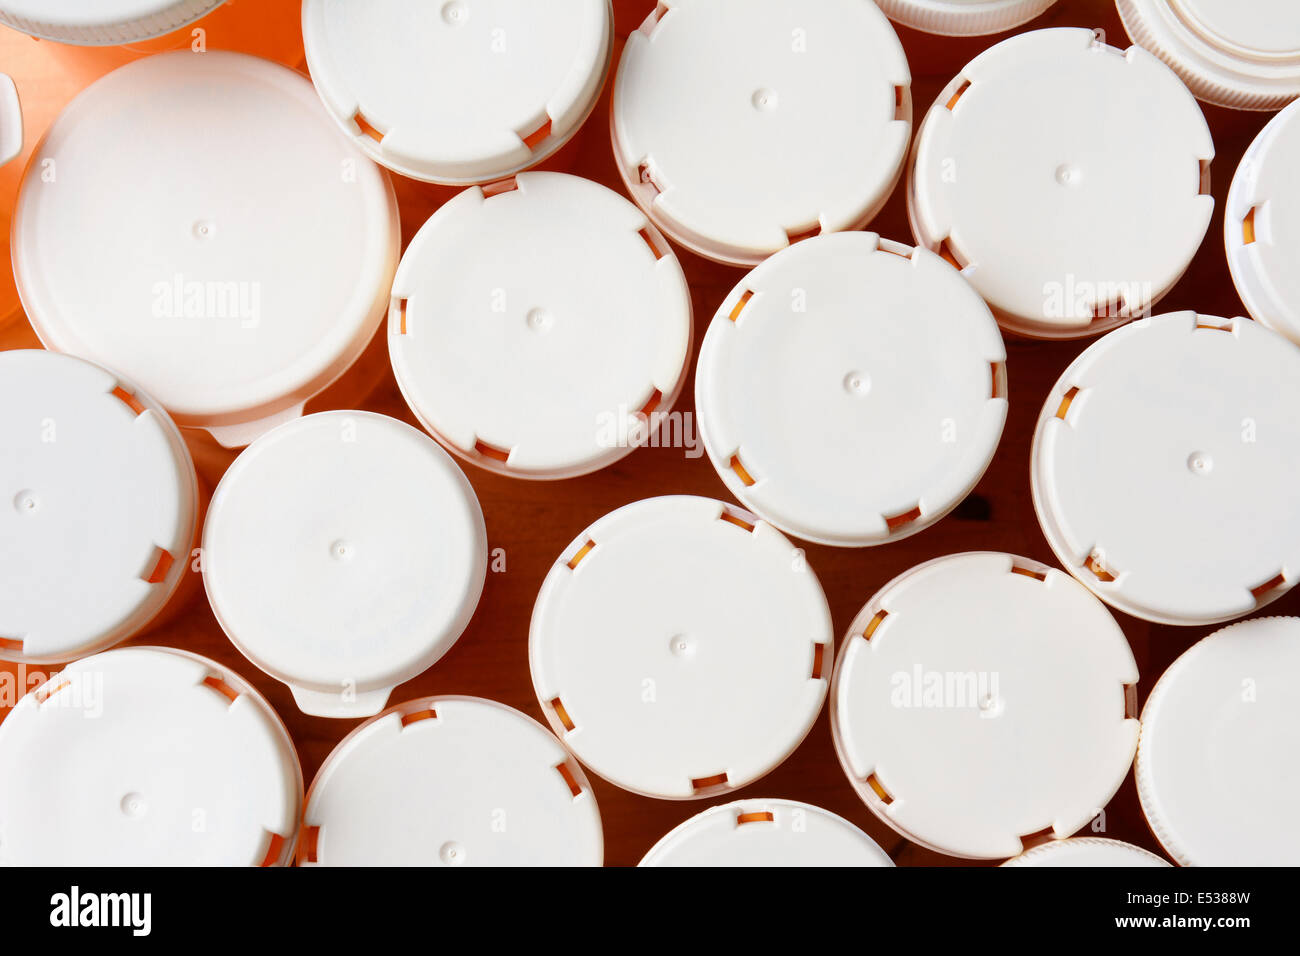 Un alto ángulo de disparo de un grupo de medicamentos recetados de botellas. Las cimas están en blanco y son de diversos tamaños. Formato horizontal Foto de stock